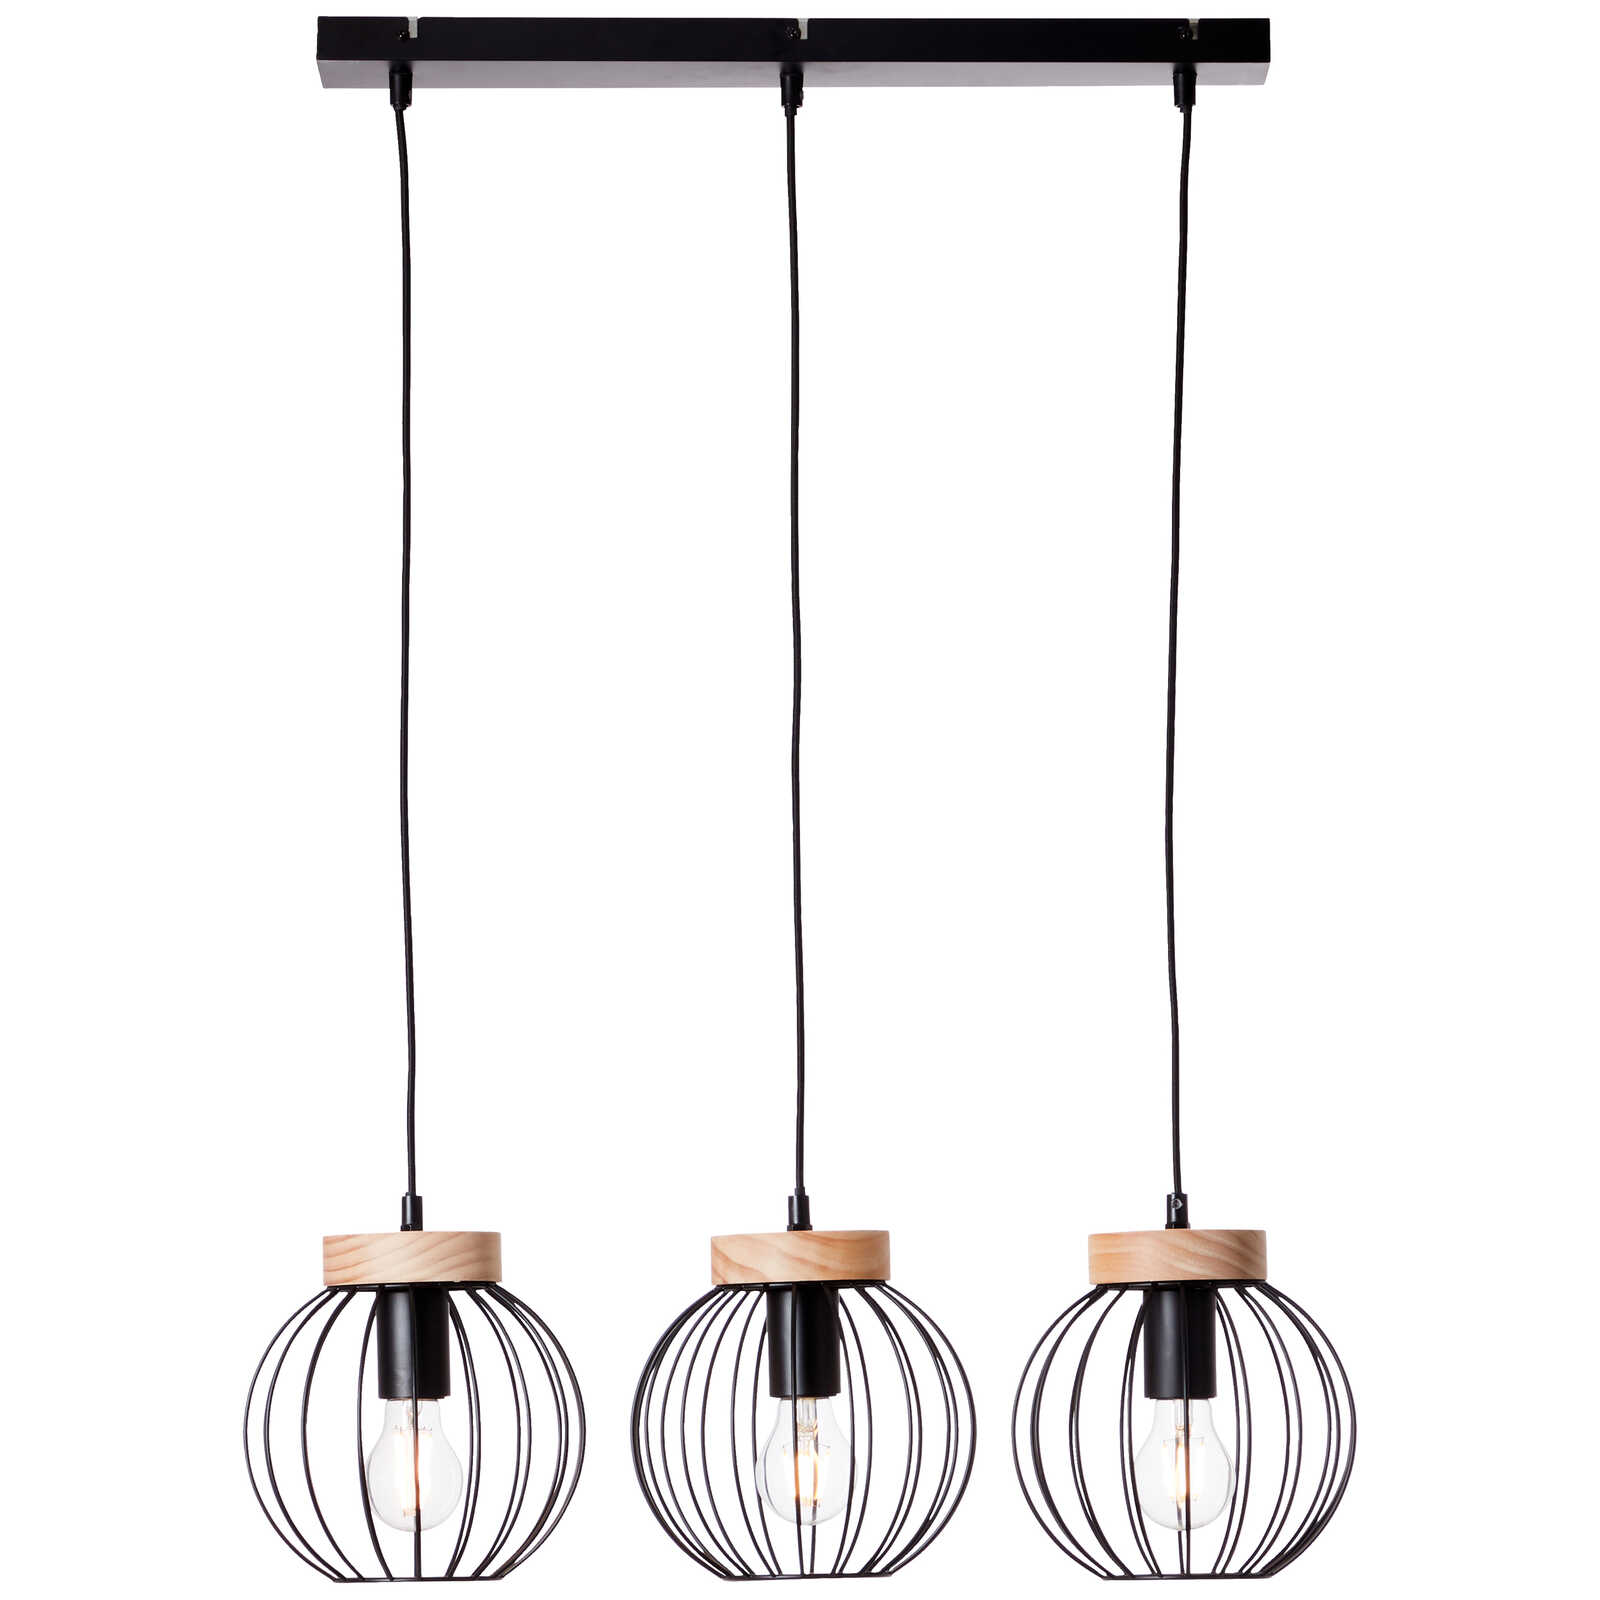             Houten hanglamp - Oliver 3 - Bruin
        